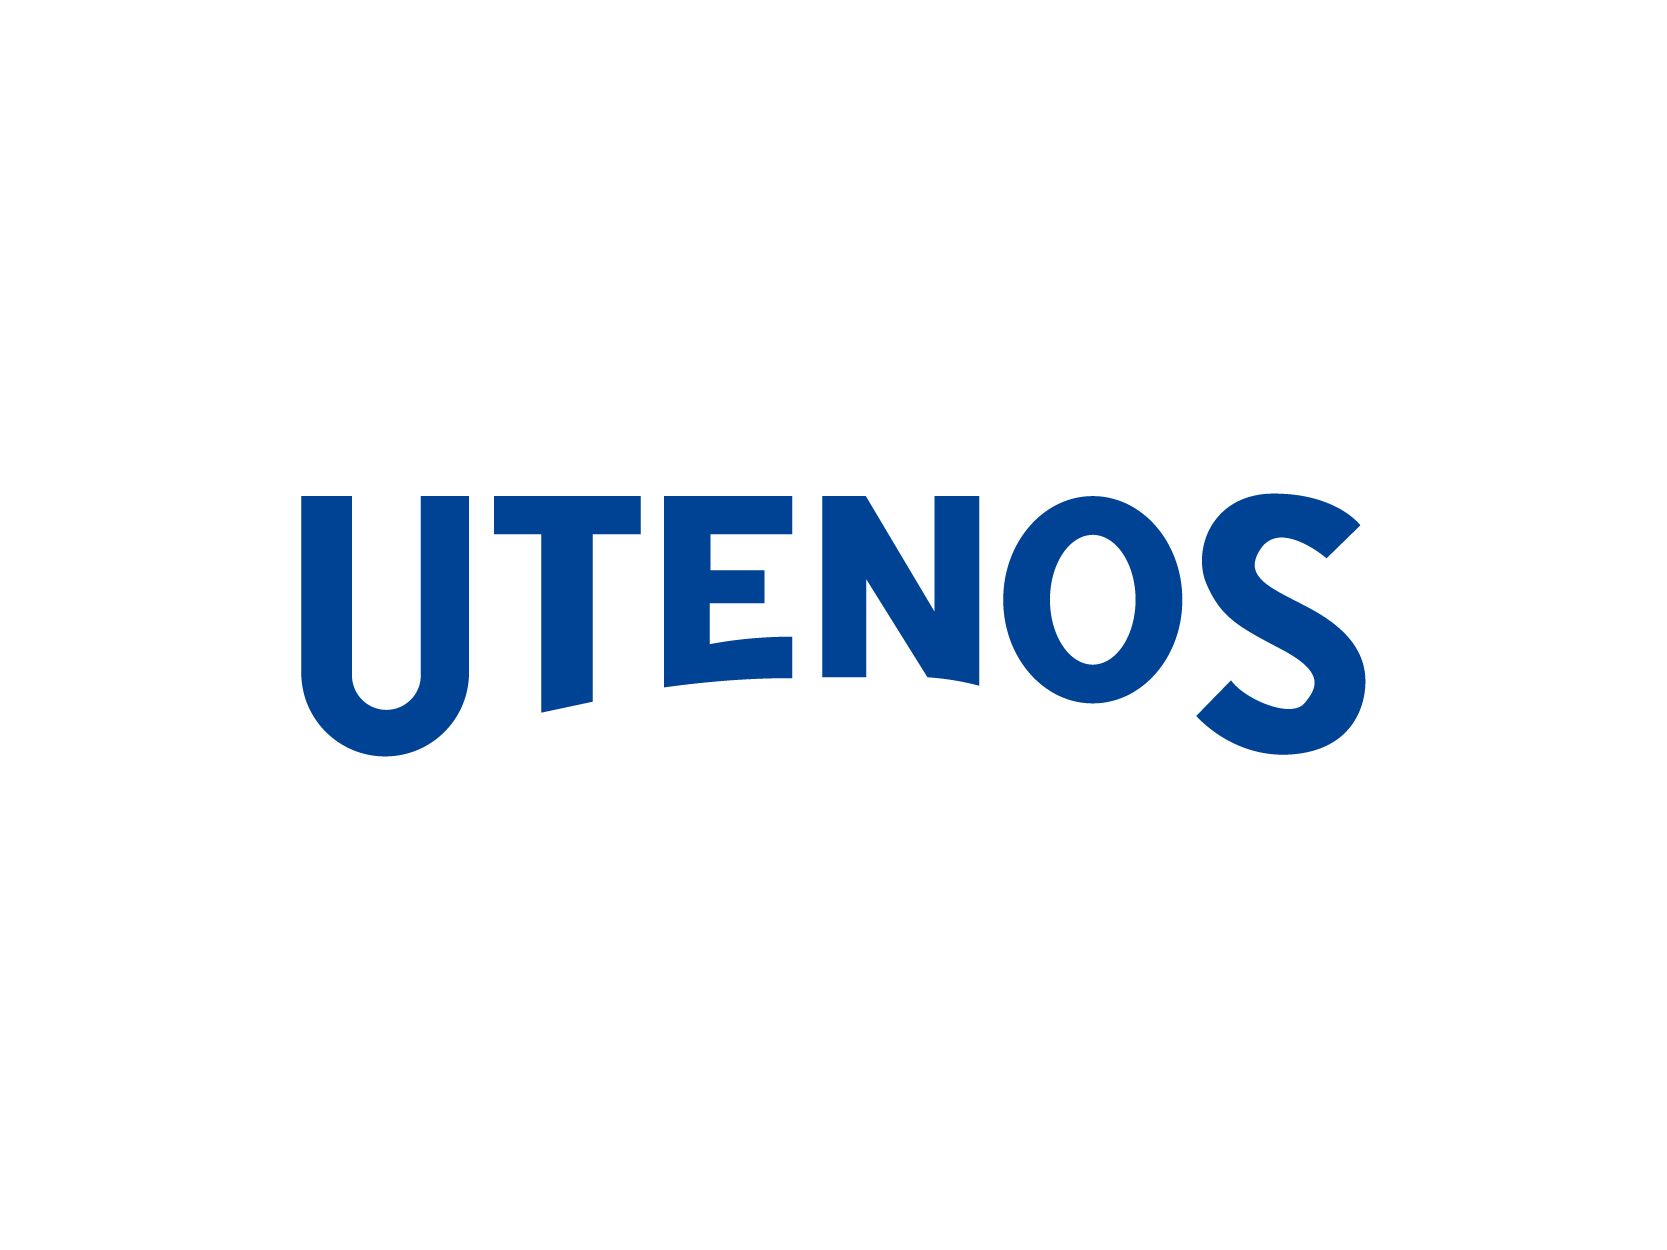 Utenoslogo标志设计